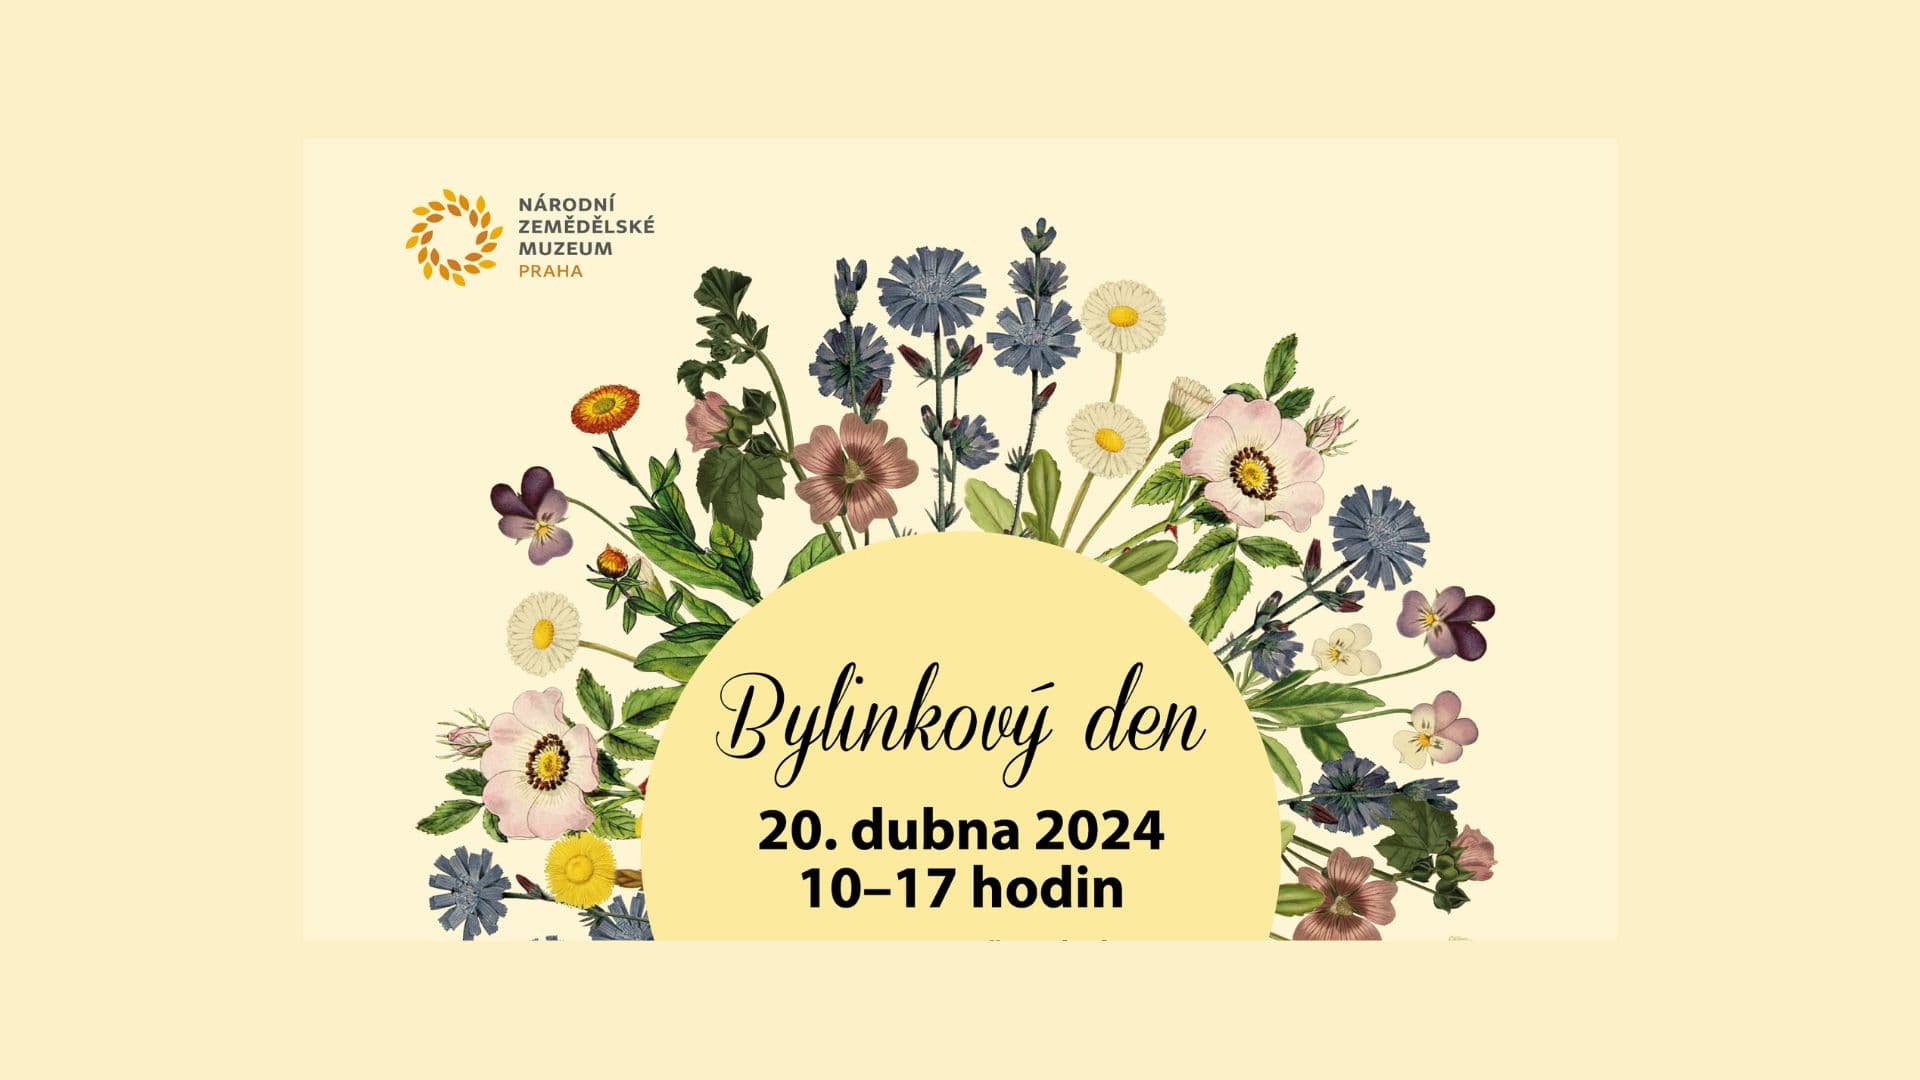 20 апреля в Национальном сельскохозяйственном музее в Праге пройдет Bylinkový den